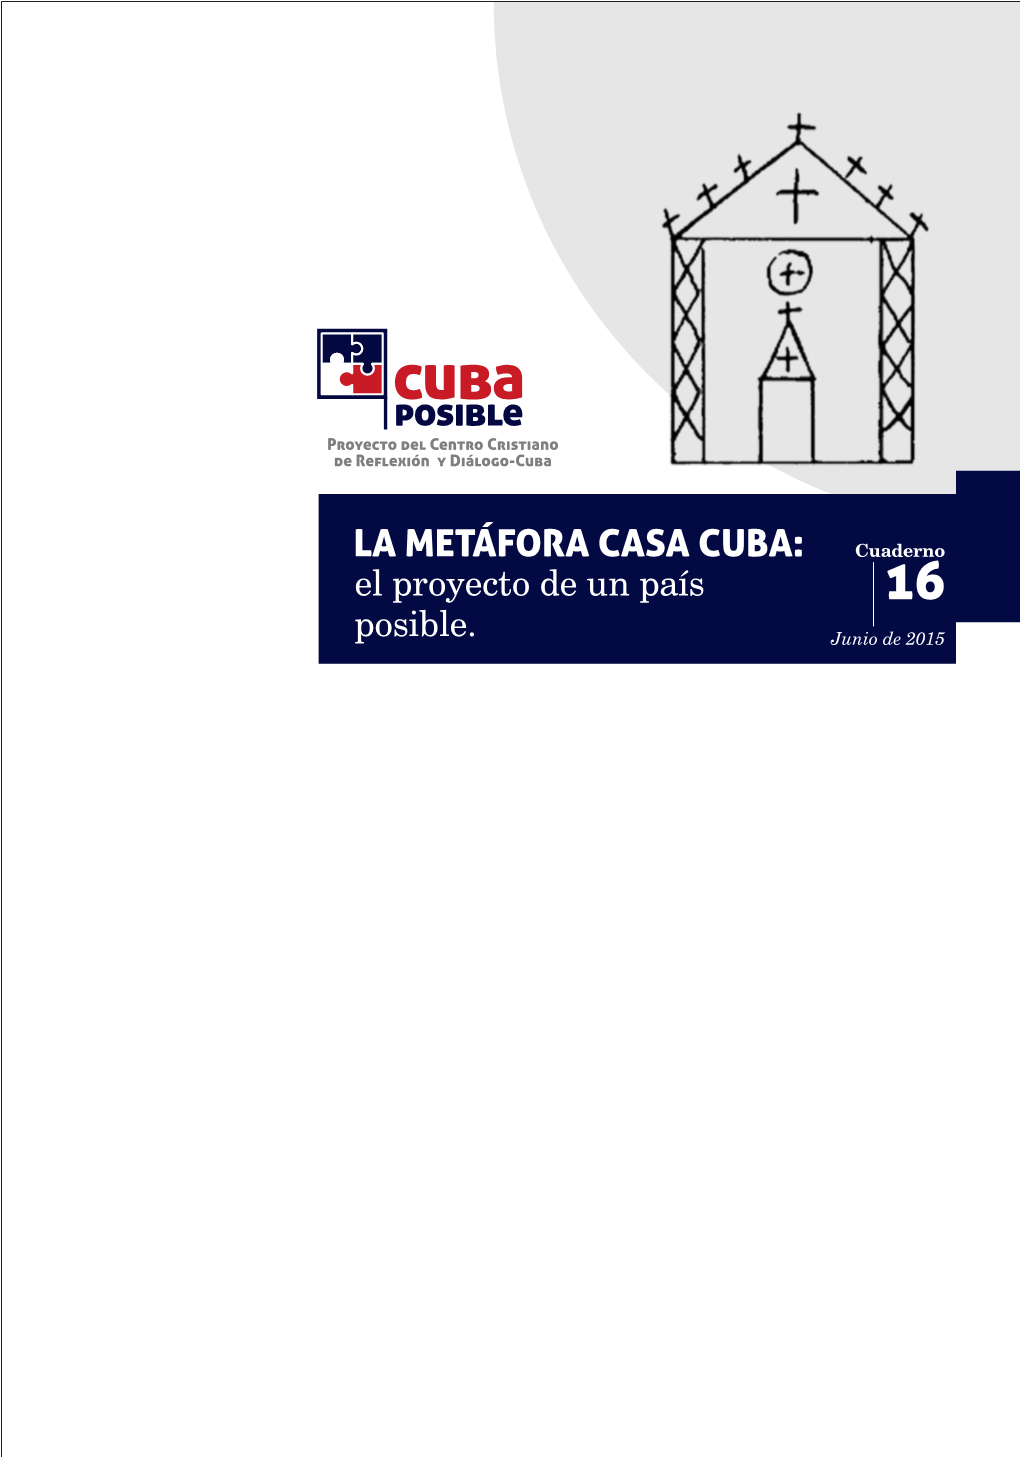 LA METÁFORA CASA CUBA: Cuaderno El Proyecto De Un País 16 Posible